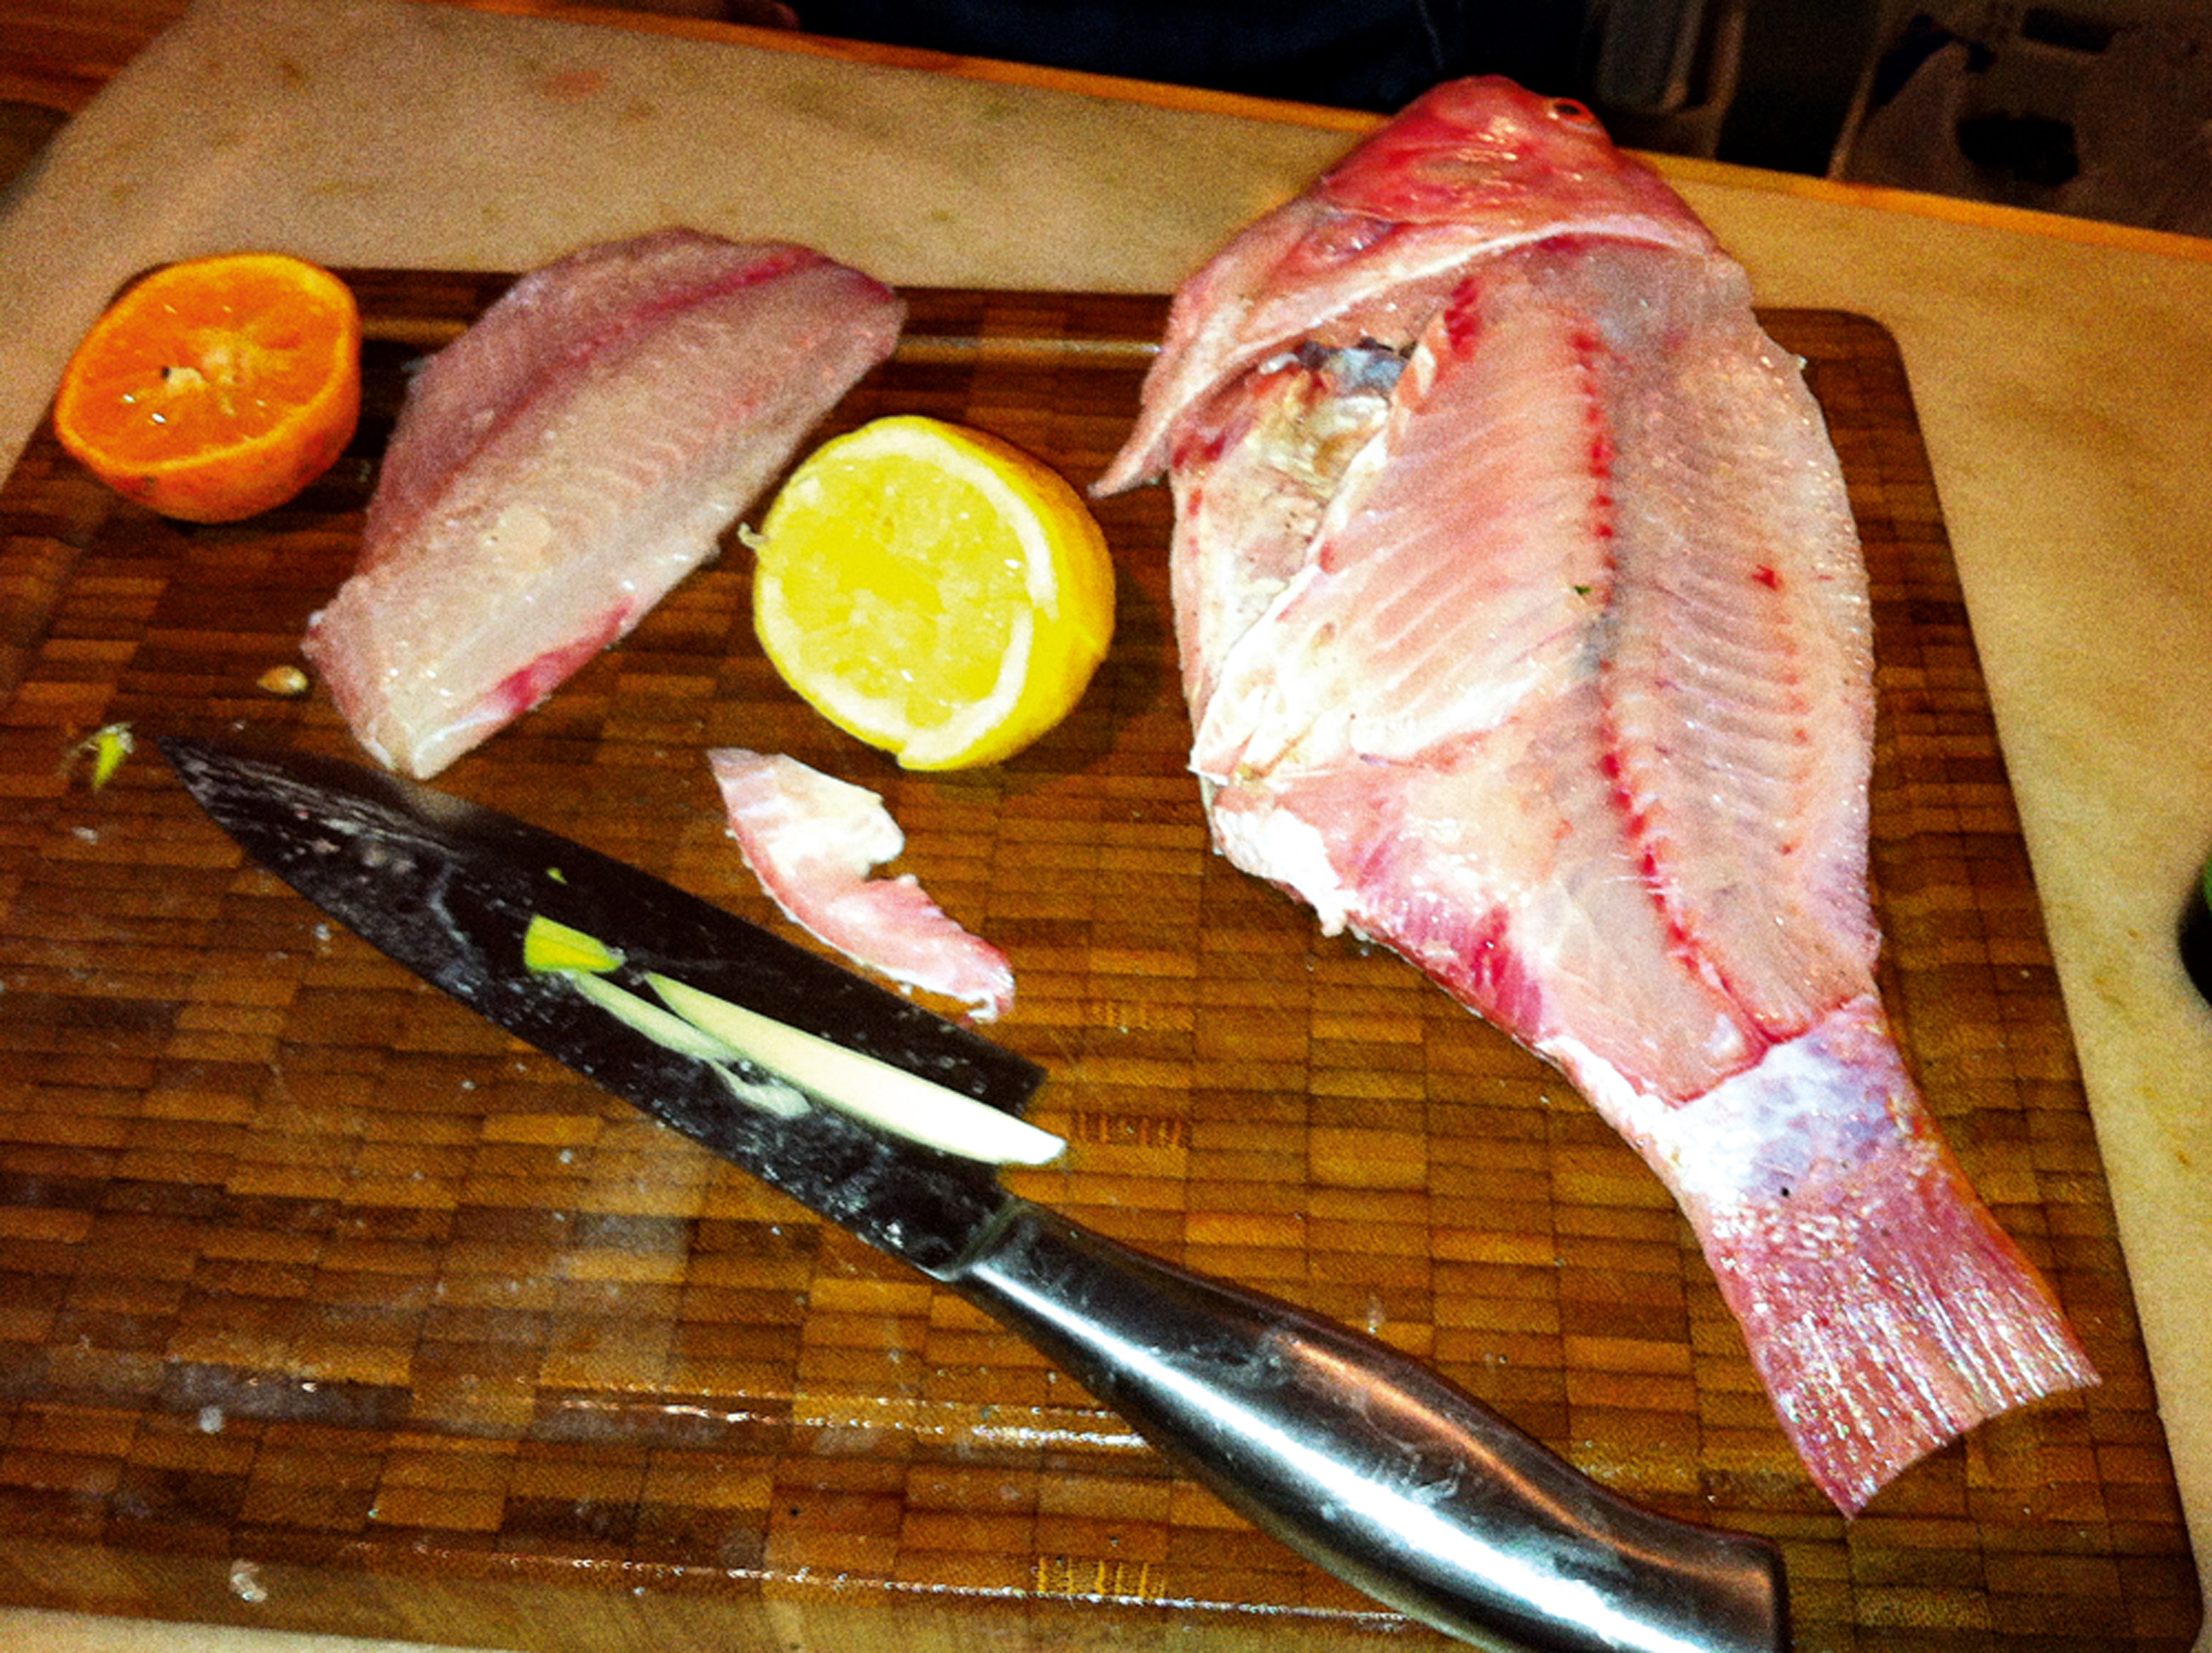 16:00 -  Dei uma aula para a turma de gastronomia do Instituto Capim Santo. Preparamos dois tipos de peixe.